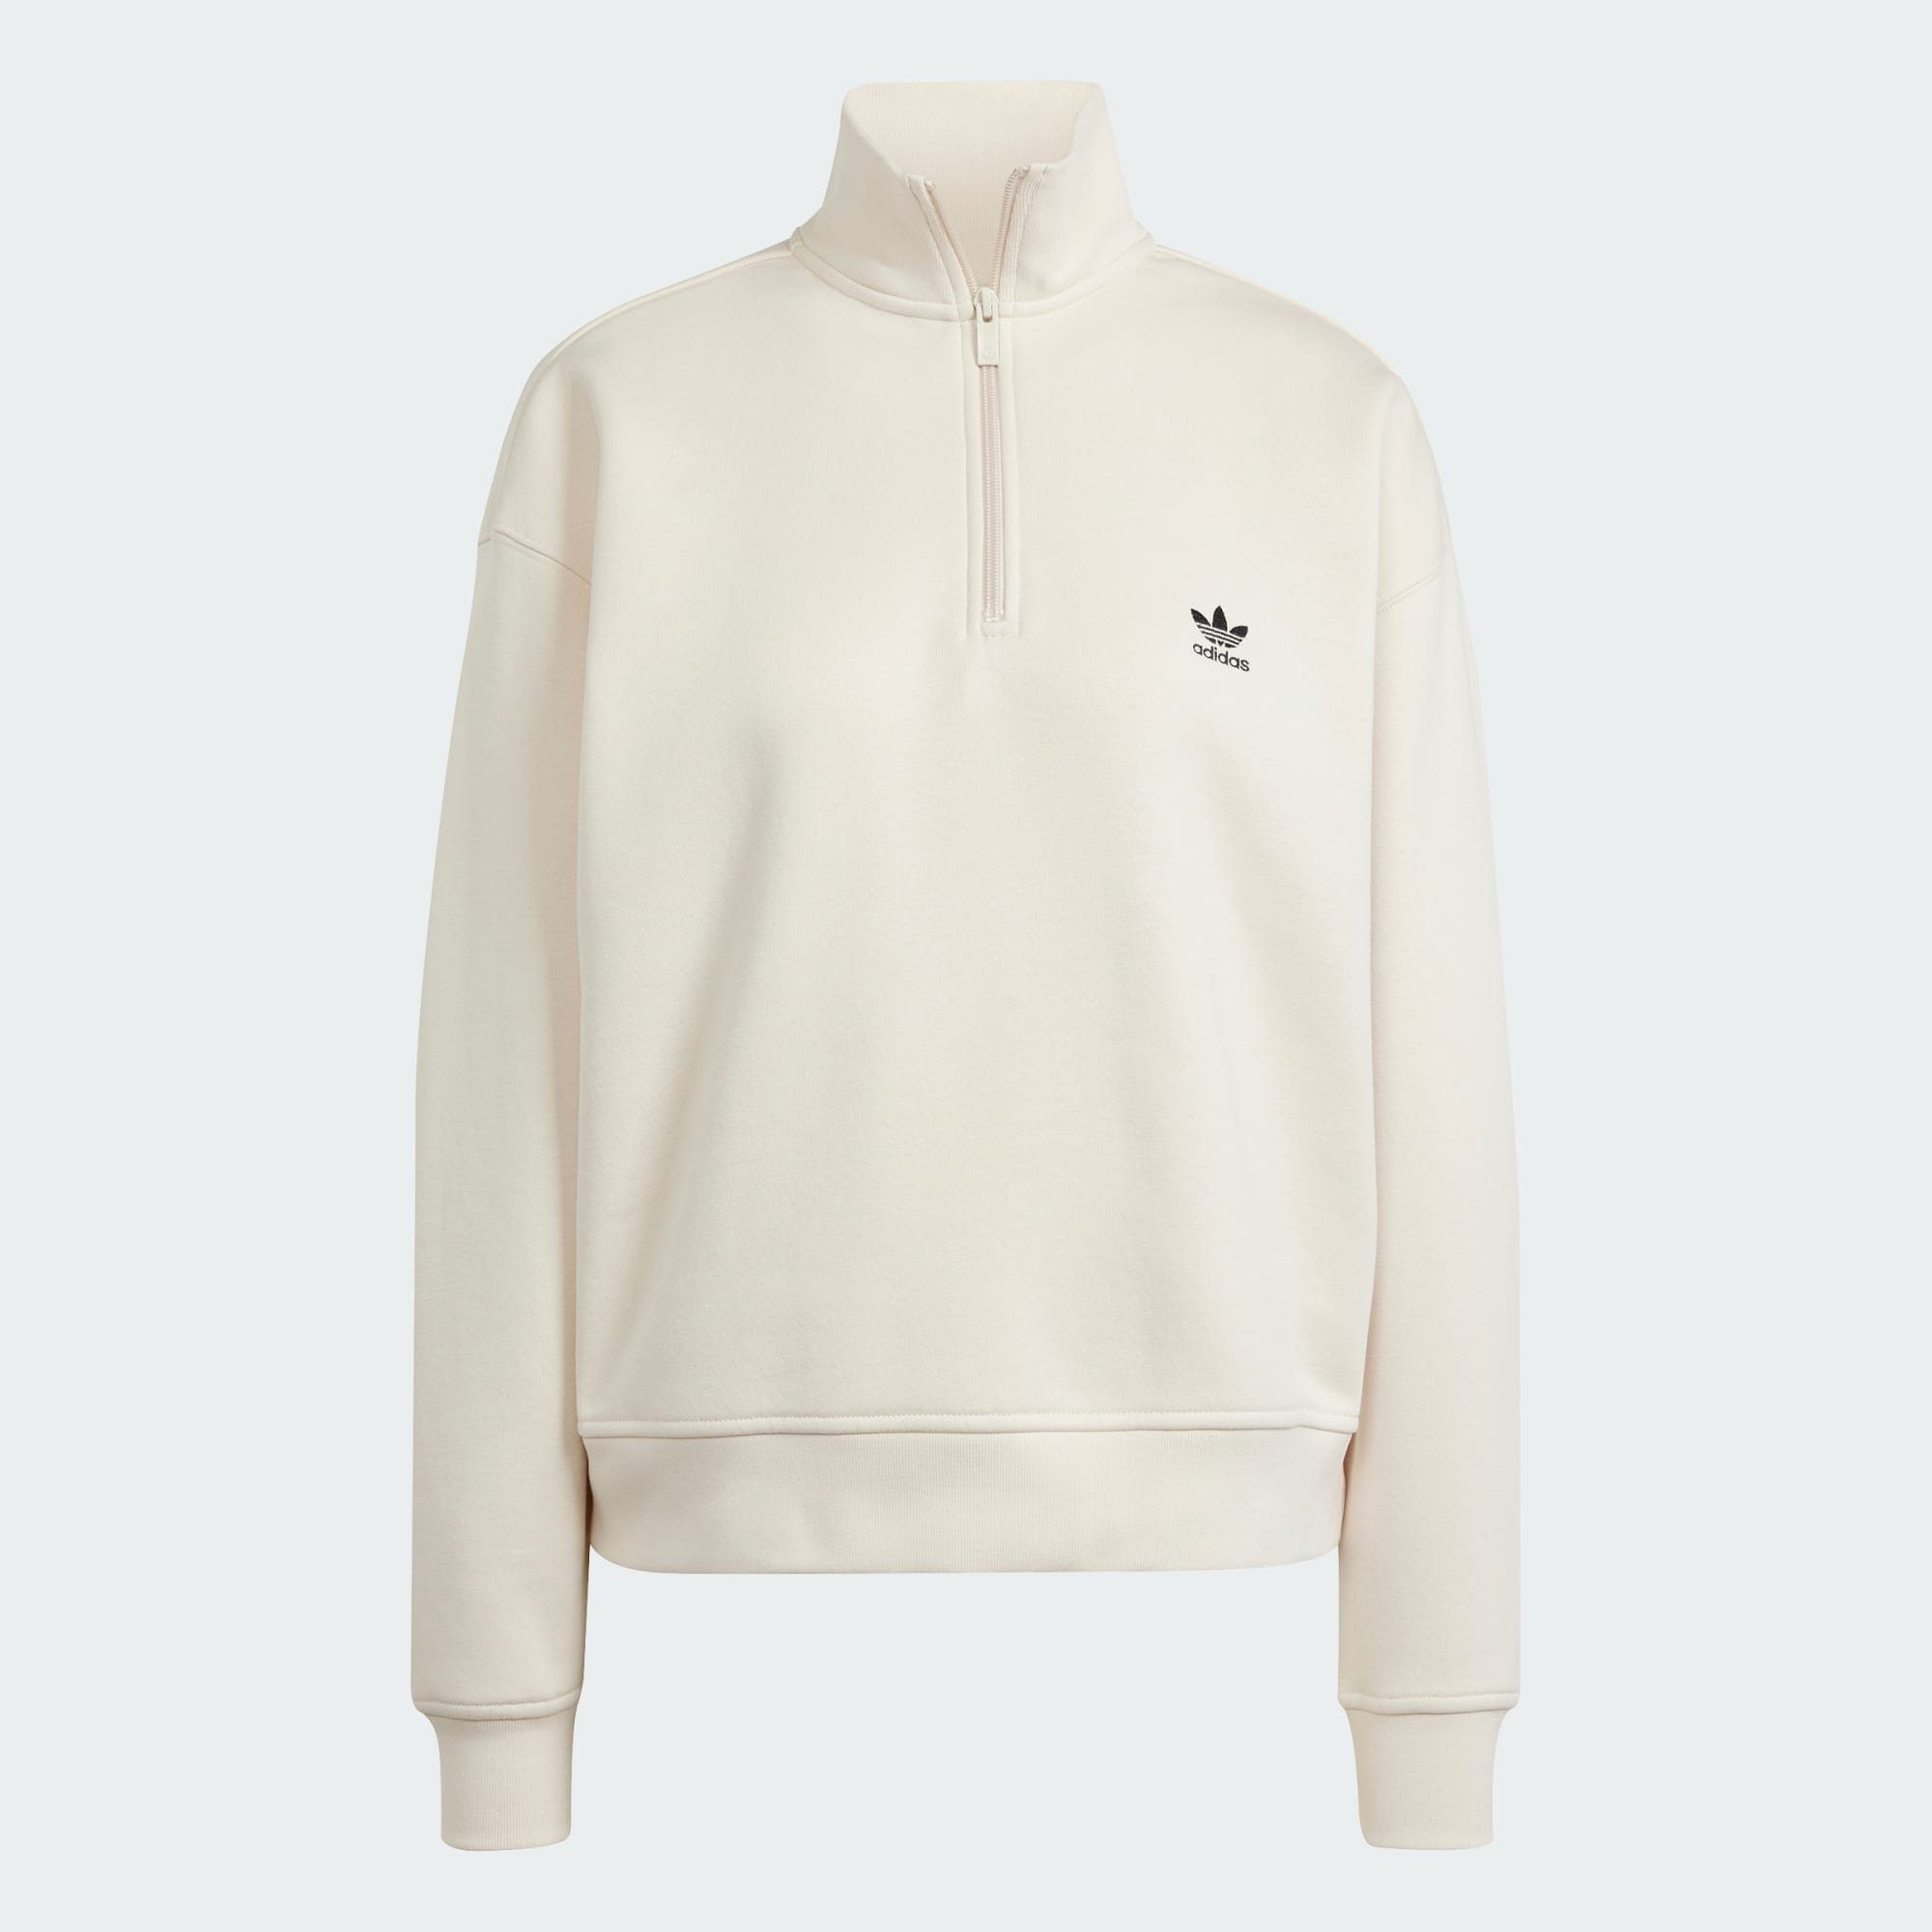 1/2 White Wonder Originals Sweatshirt ZIP ESSENTIALS adidas SWEATSHIRT